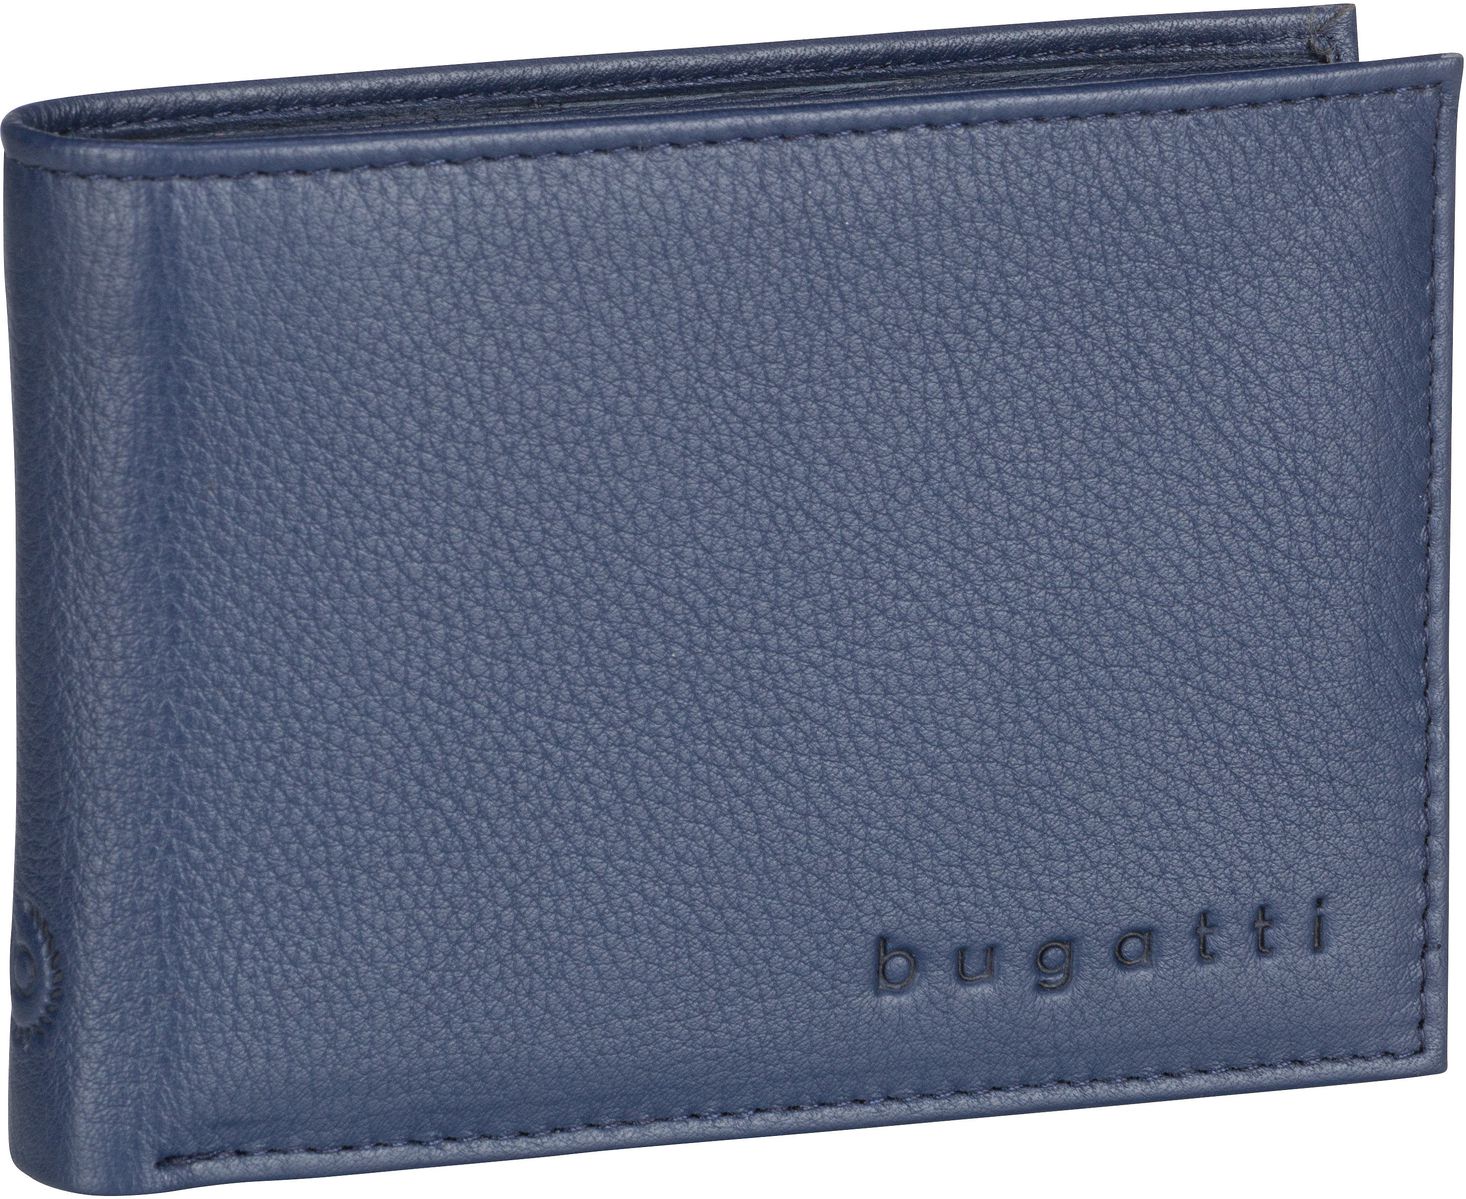 Bugatti Sempre Wallet 1177 - Blau